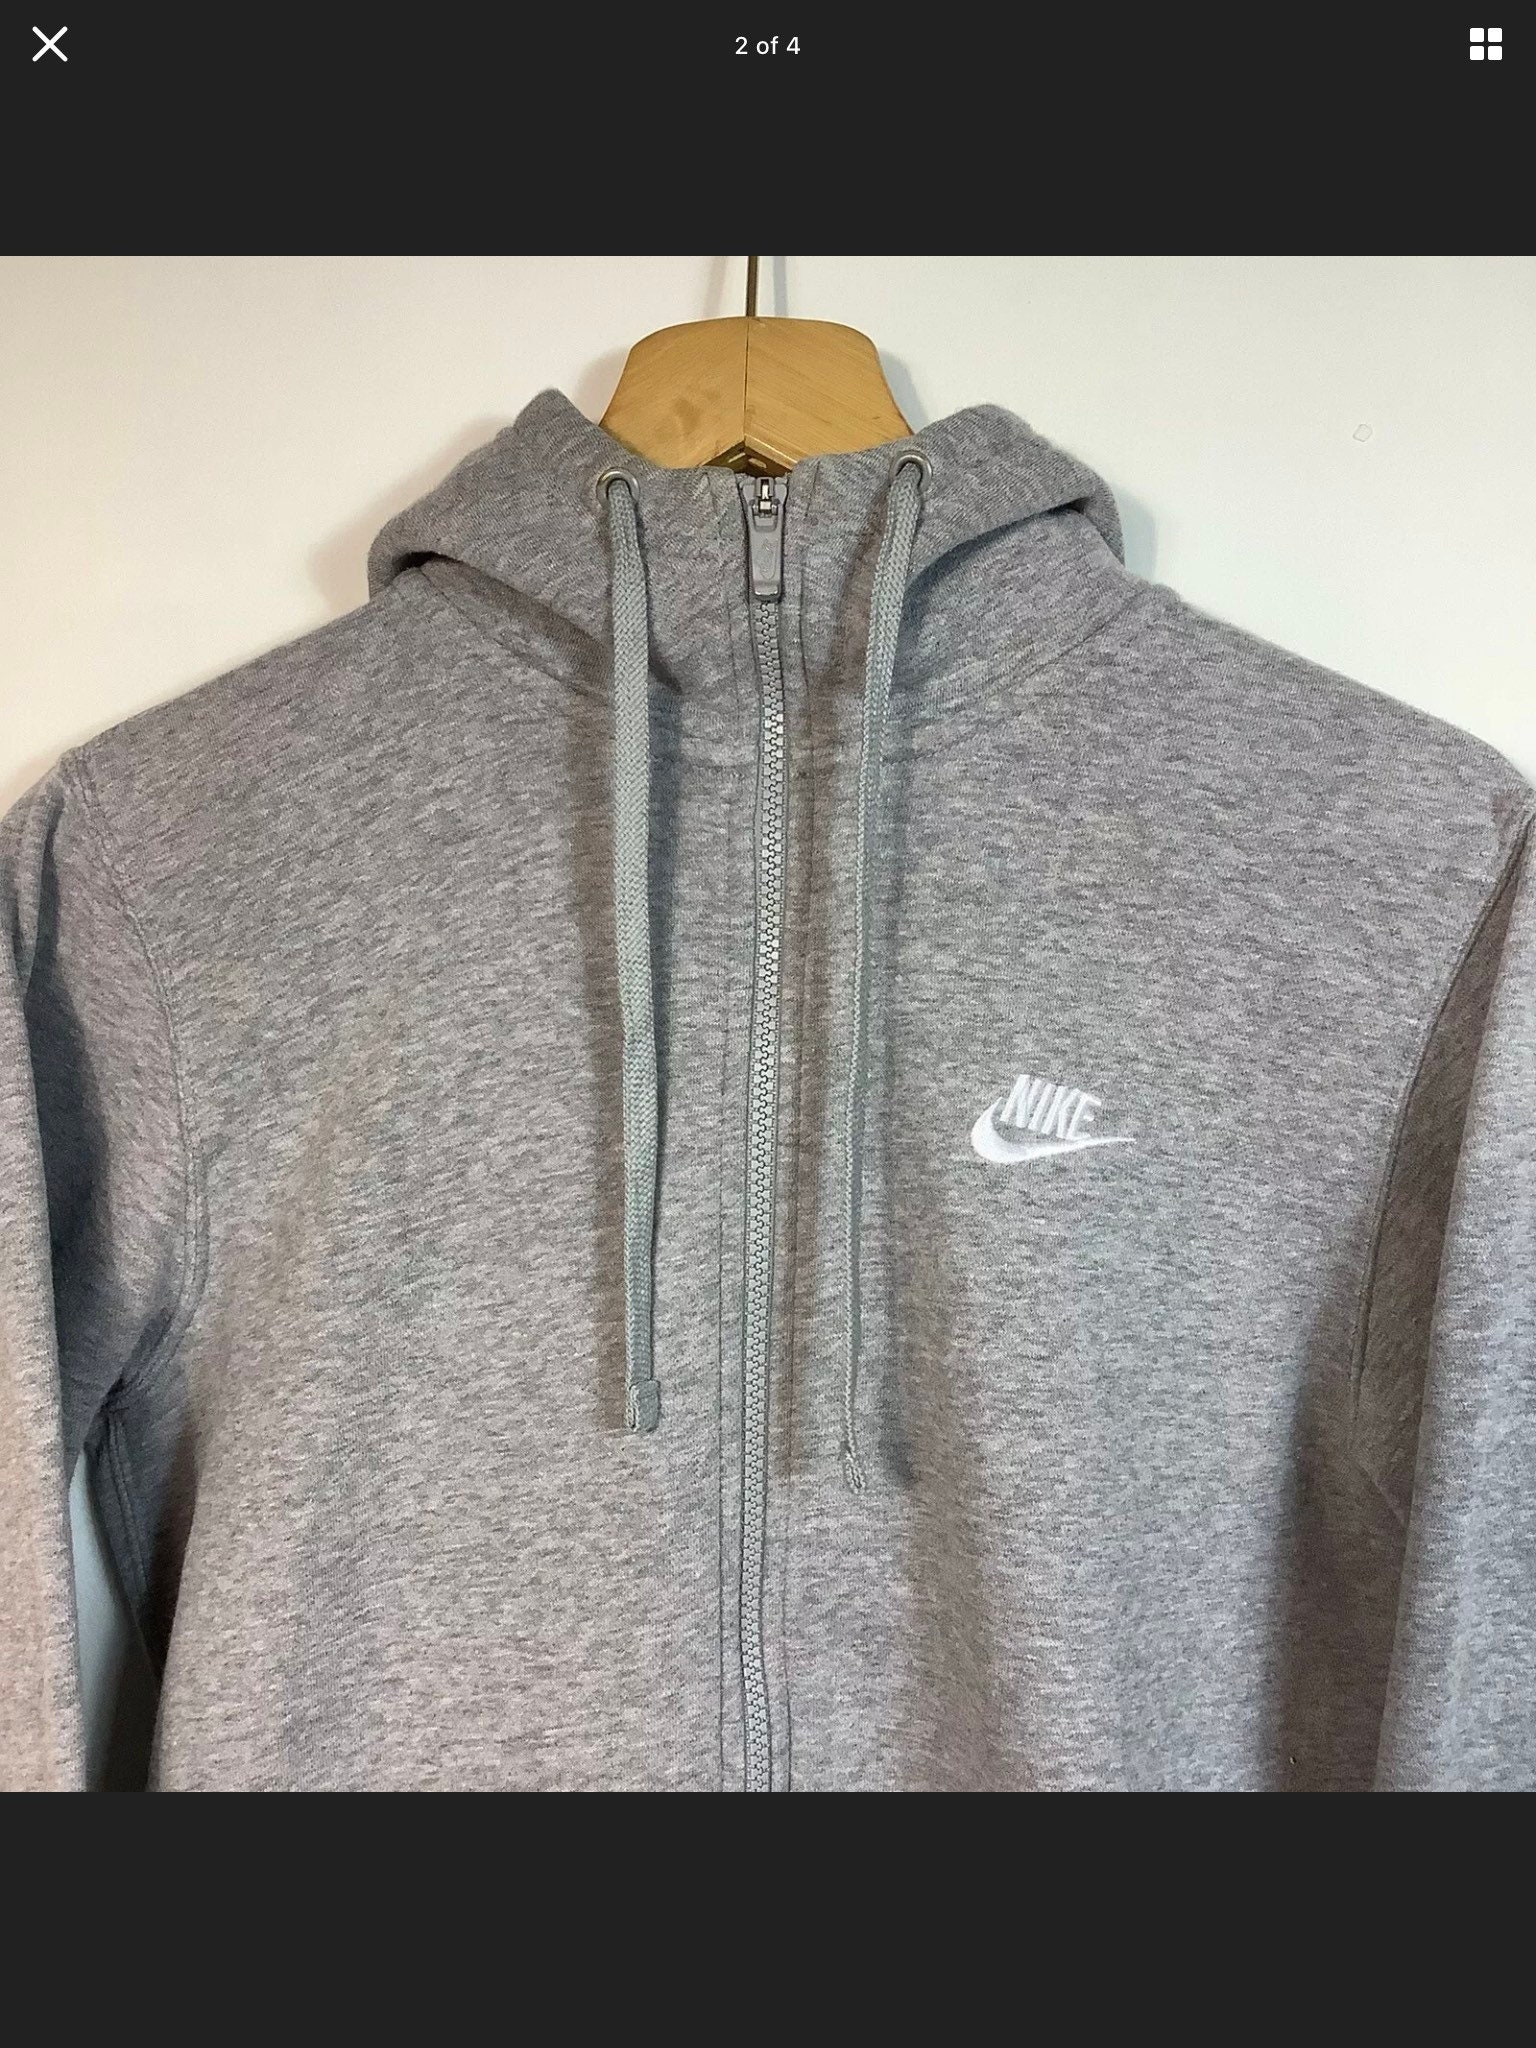 Vintage Nike full zip hoodie | Etsy